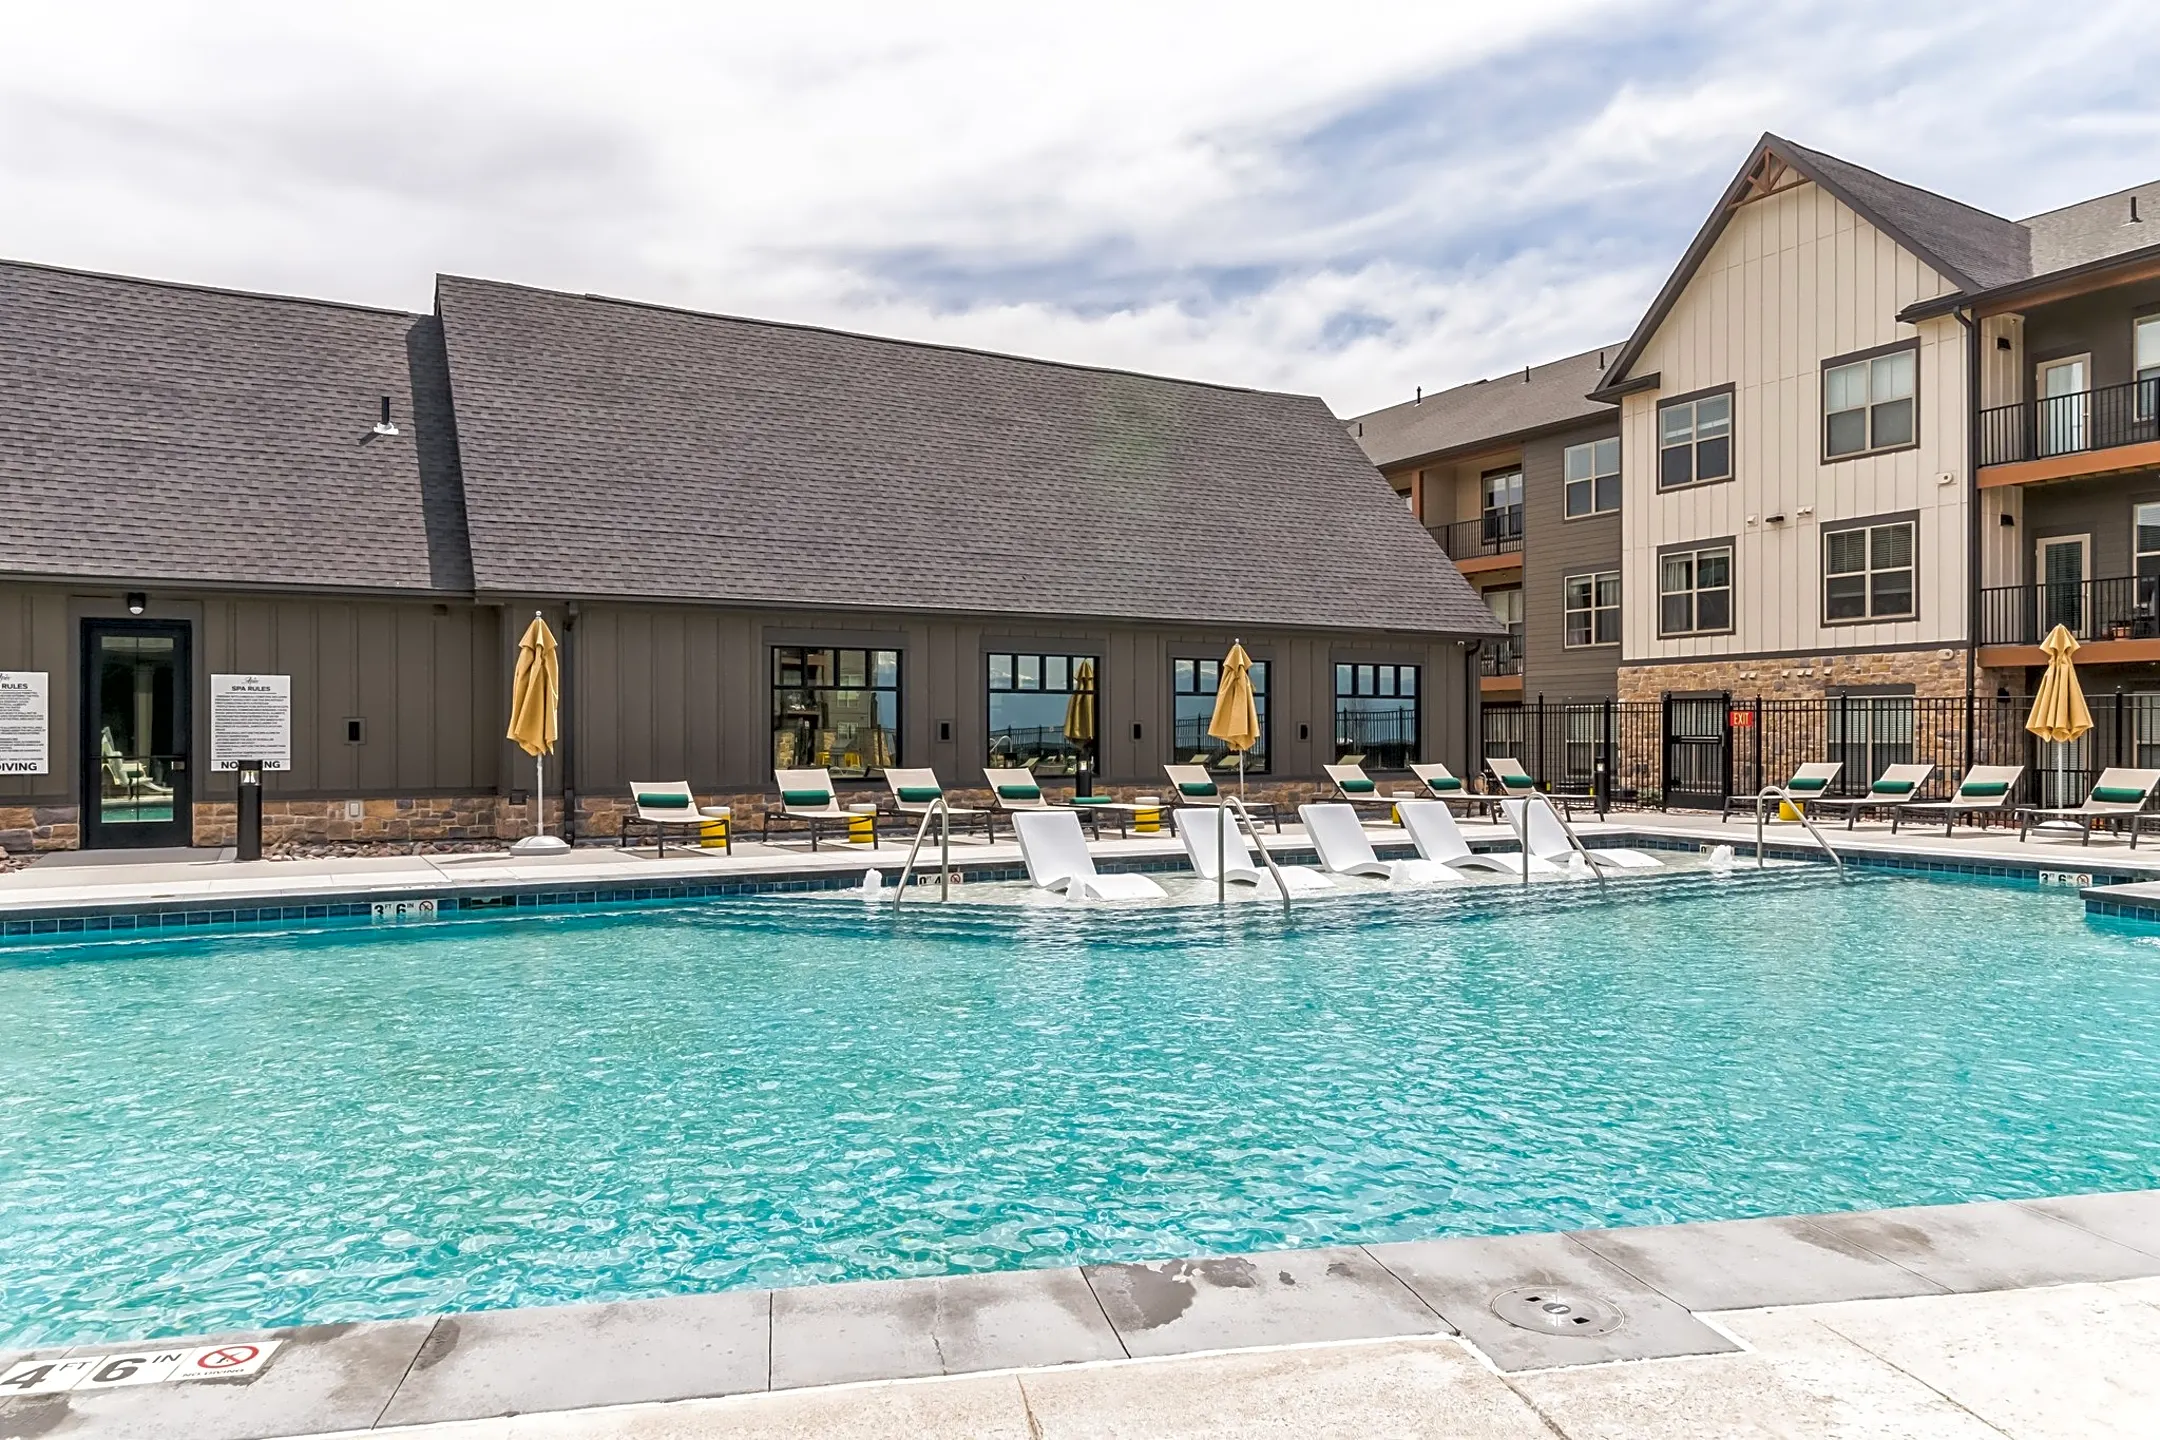 Pool - Apex Apartments - Colorado Springs, CO